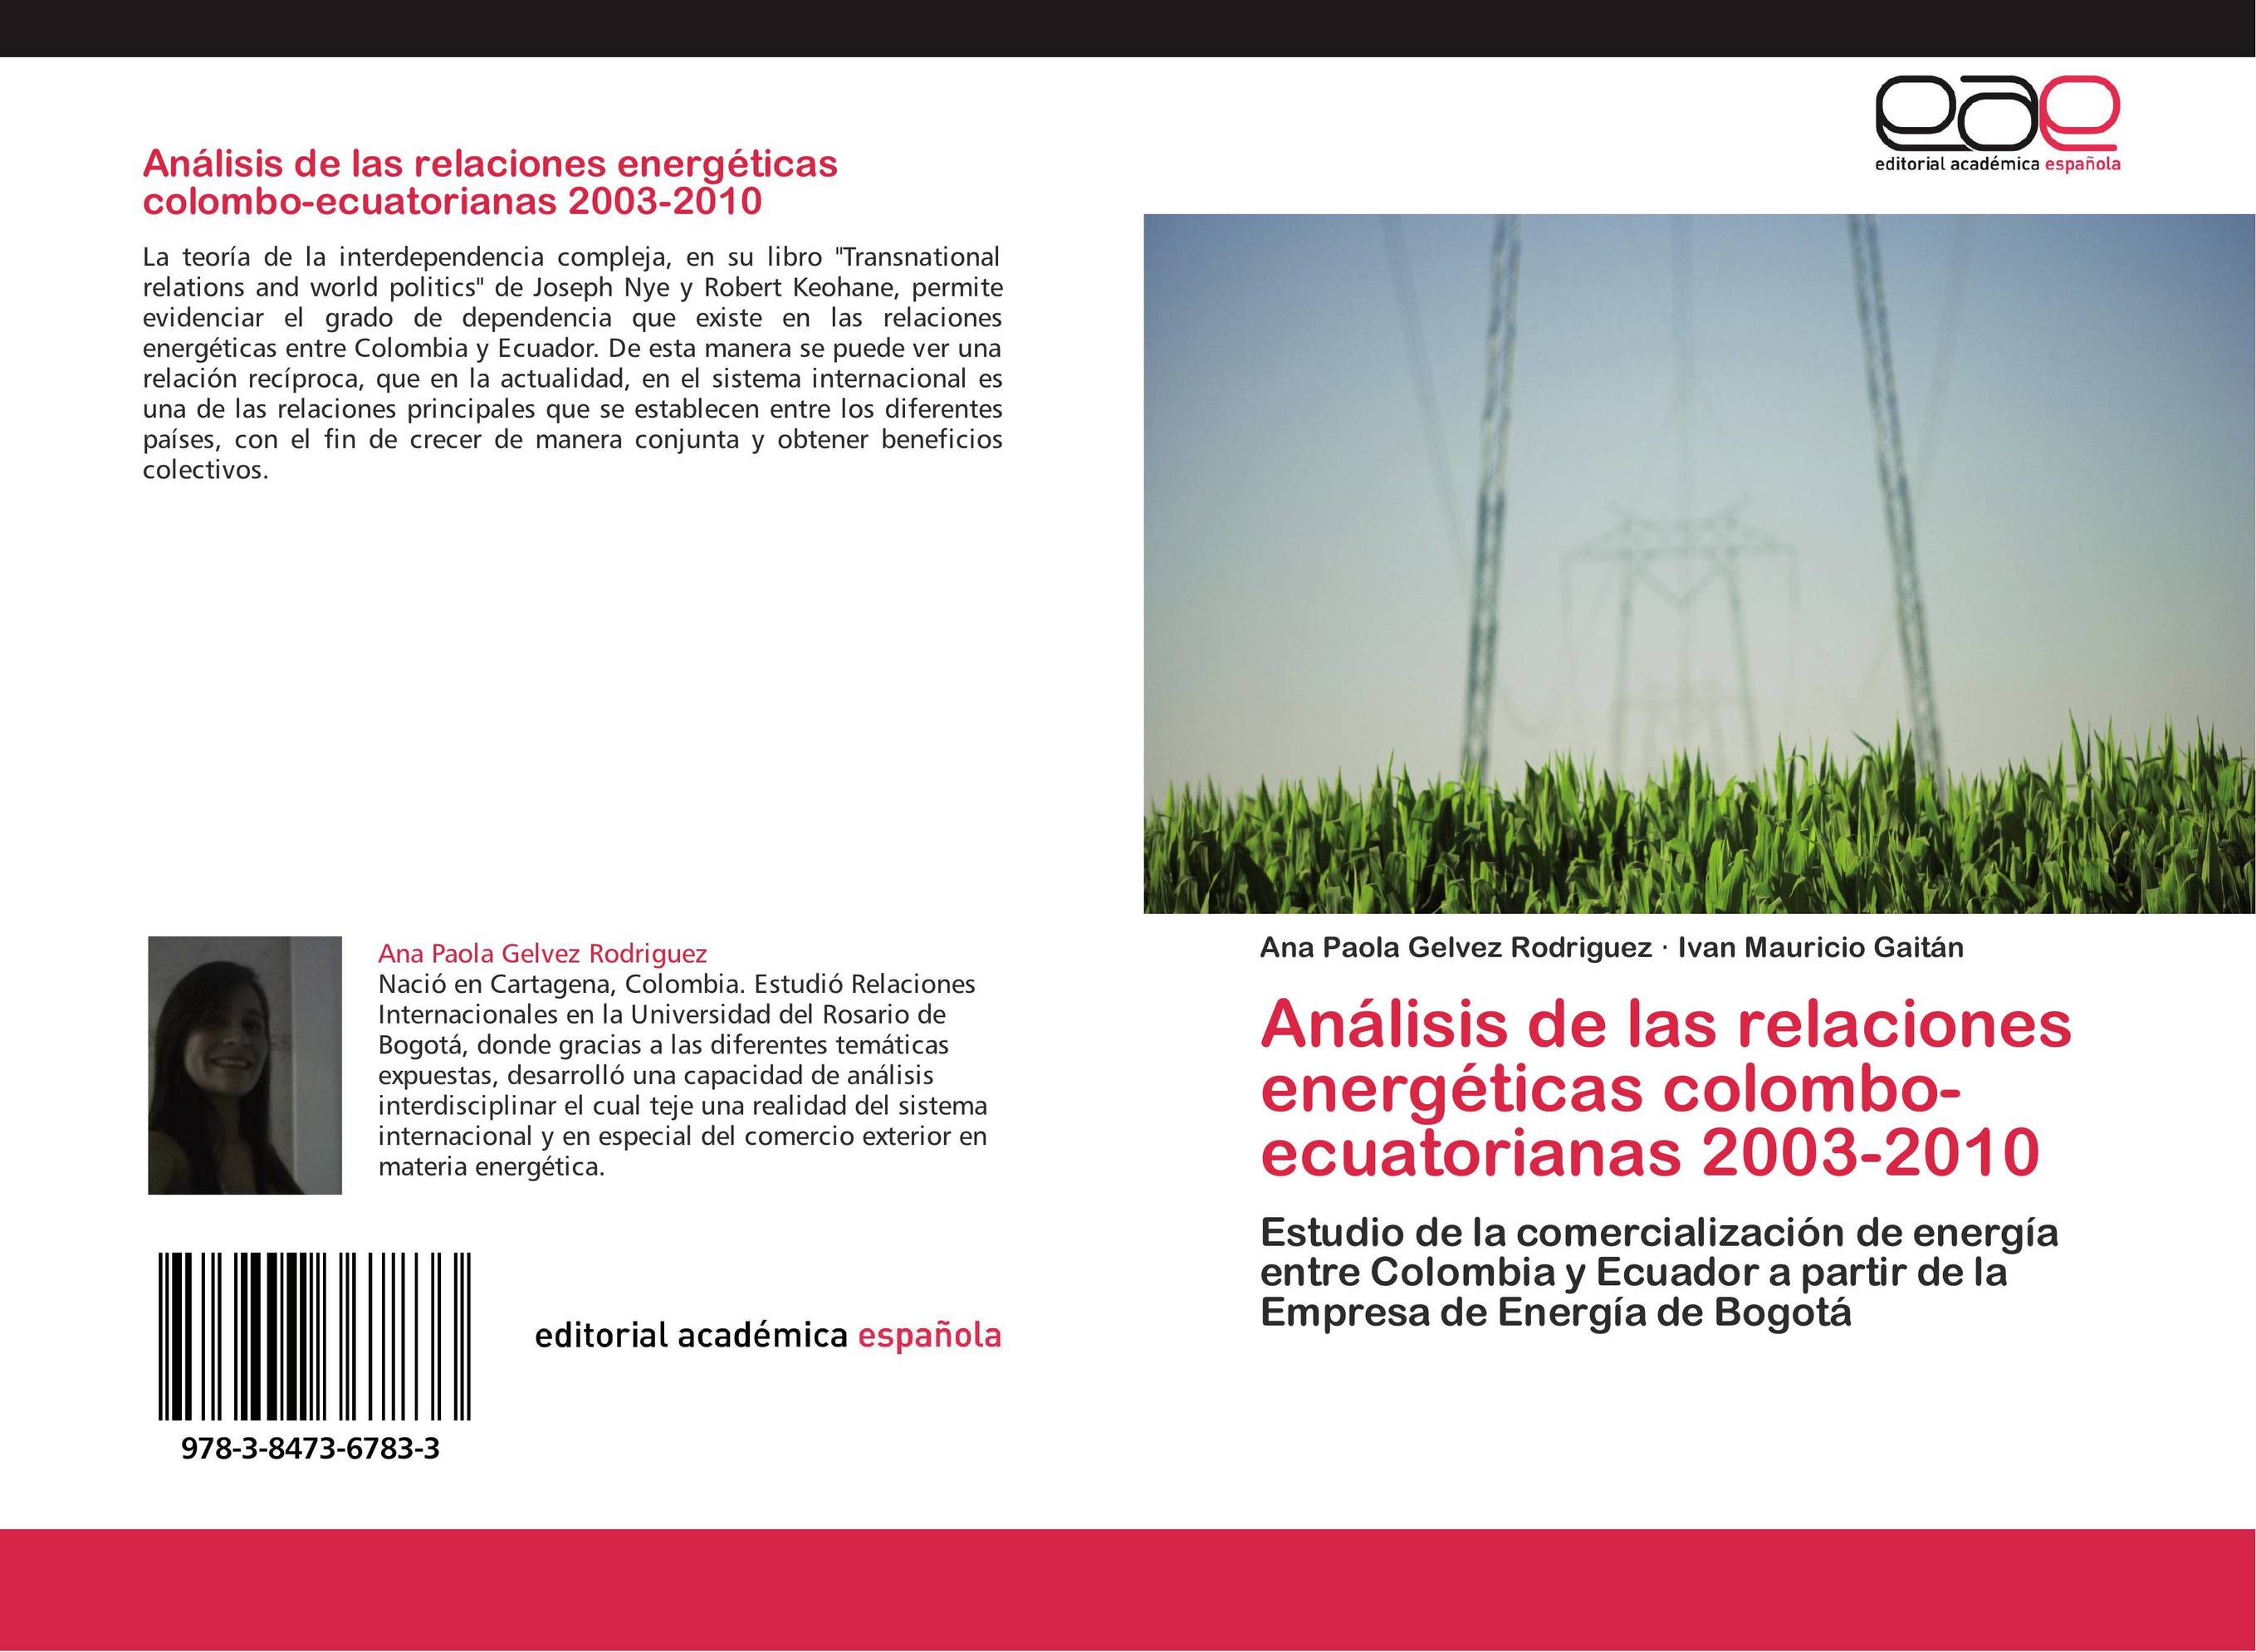 Análisis de las relaciones energéticas colombo-ecuatorianas 2003-2010